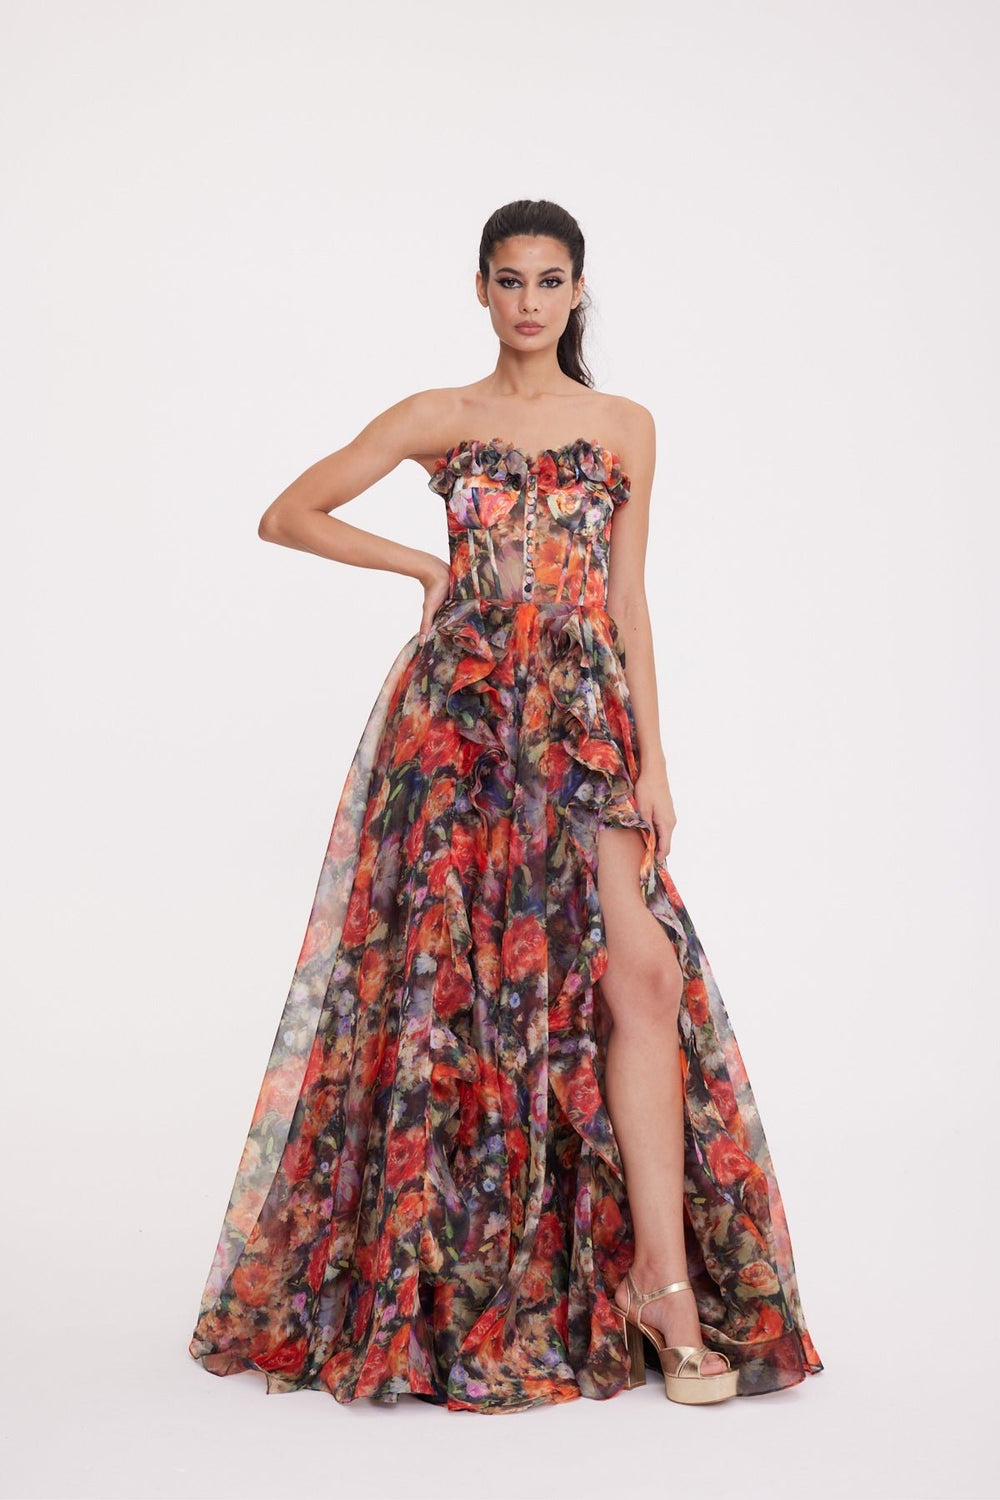 Marigold Strapless Slit Patterned Dress 